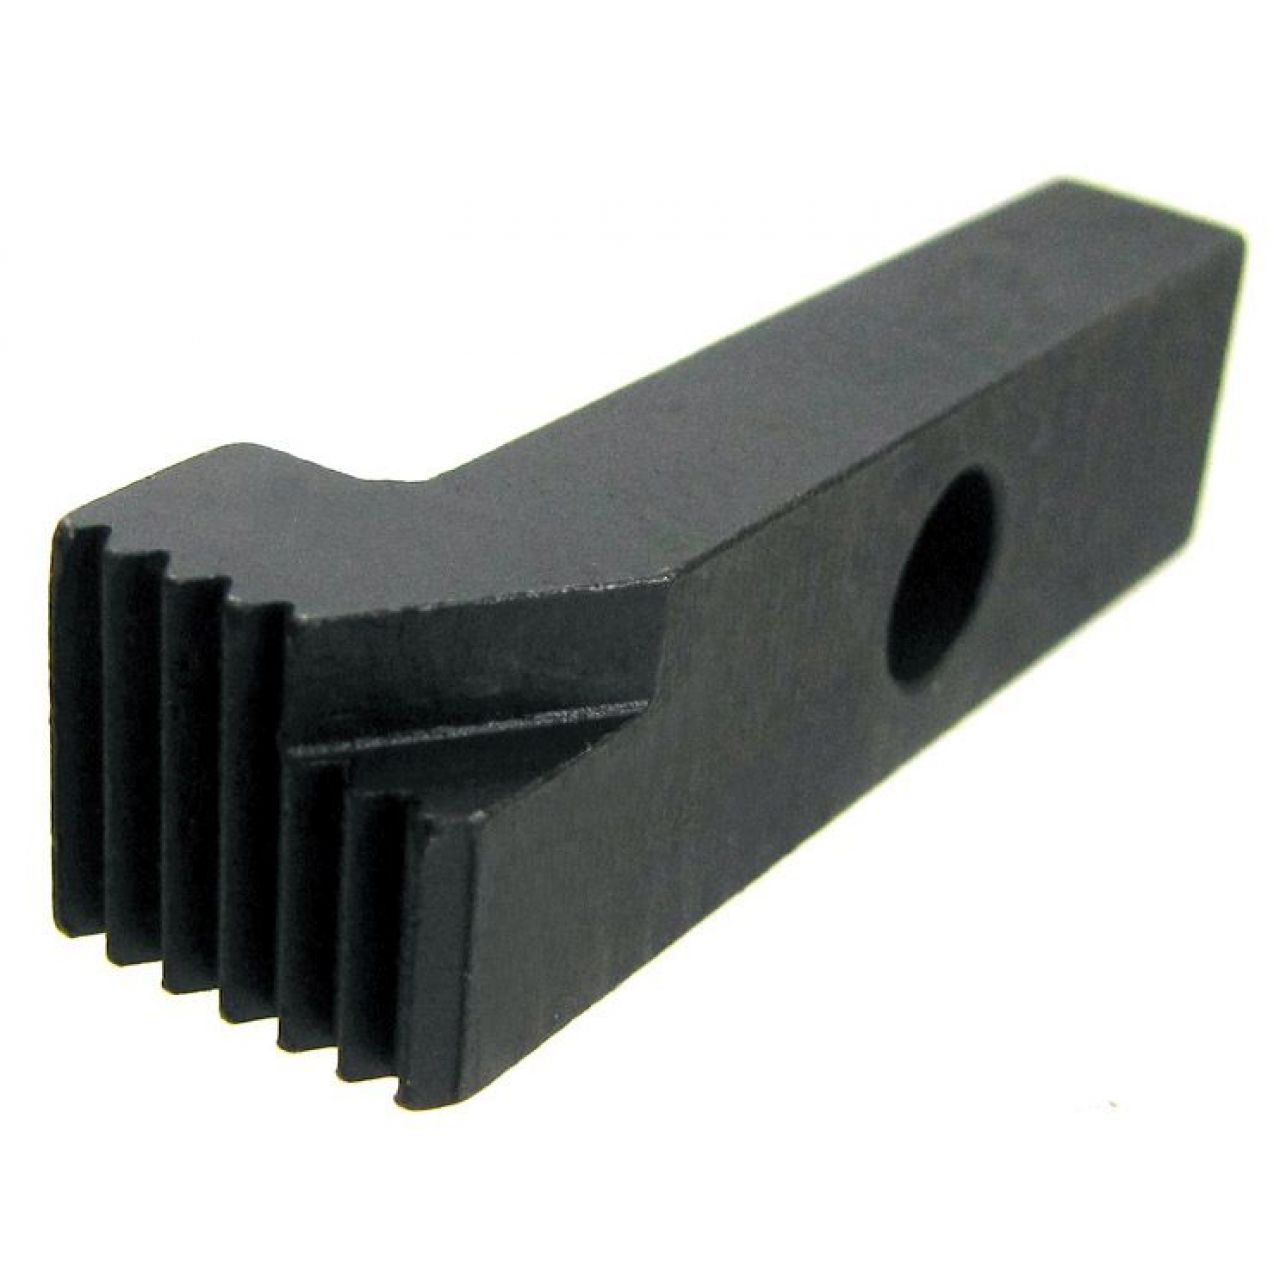 Cuchilla de varios dientes para el mecanizado con accesorio Keyway-skip, paso 1,50 mm